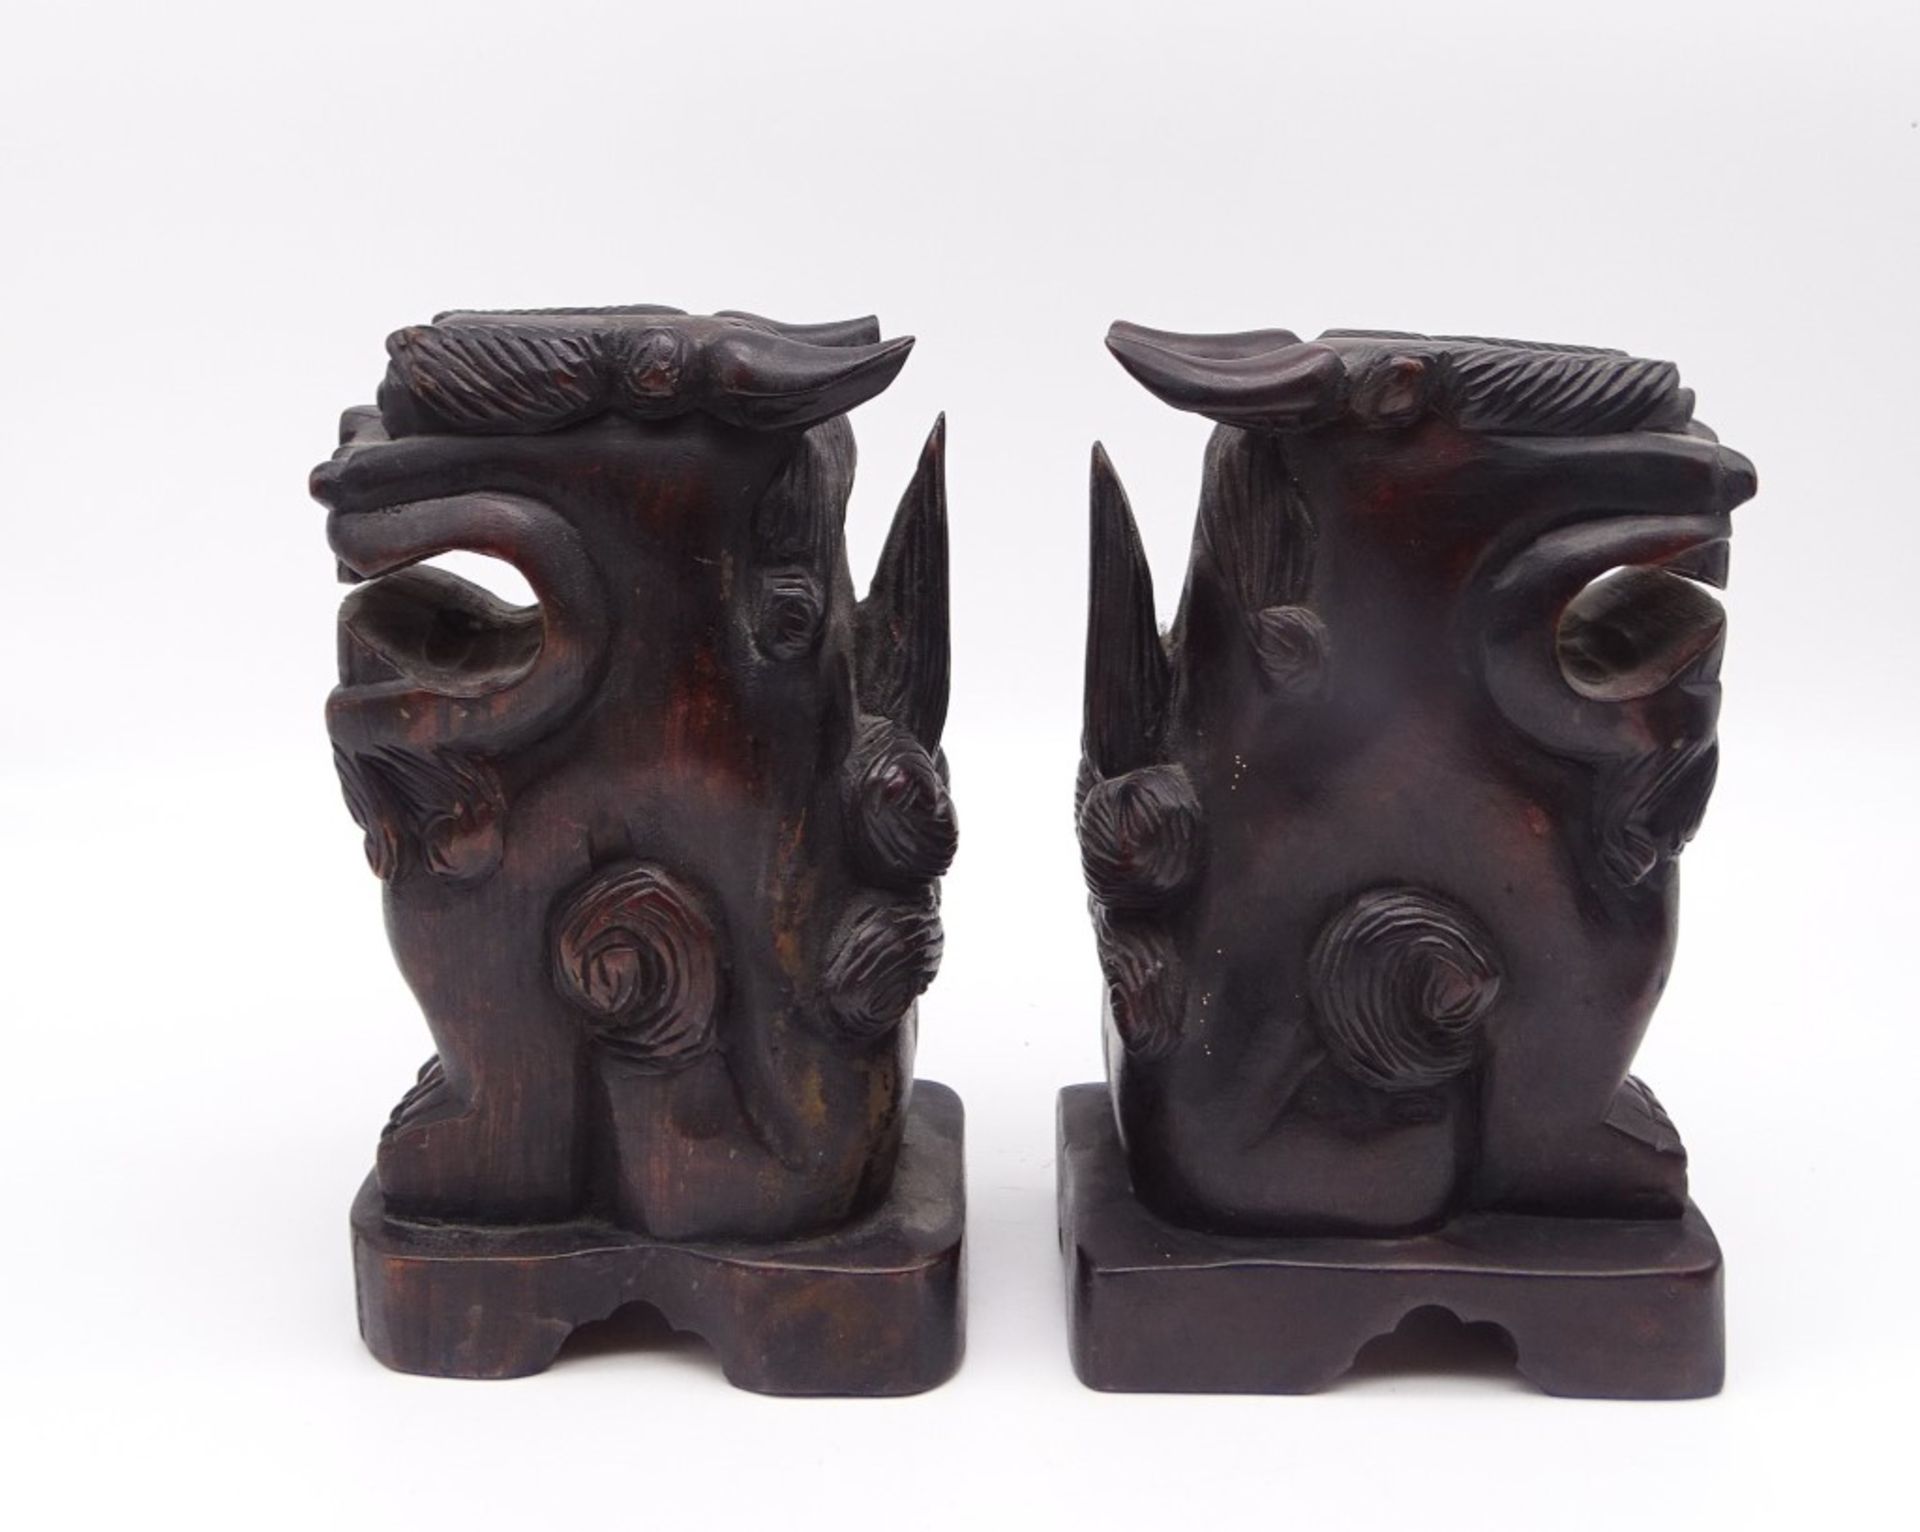 2 Fu-Hunde/ Wächterlöwen aus Holz geschnitzt, ca. 18 x 11 x 7,5 cm, leicht reinigungsbedürftig - Bild 2 aus 5